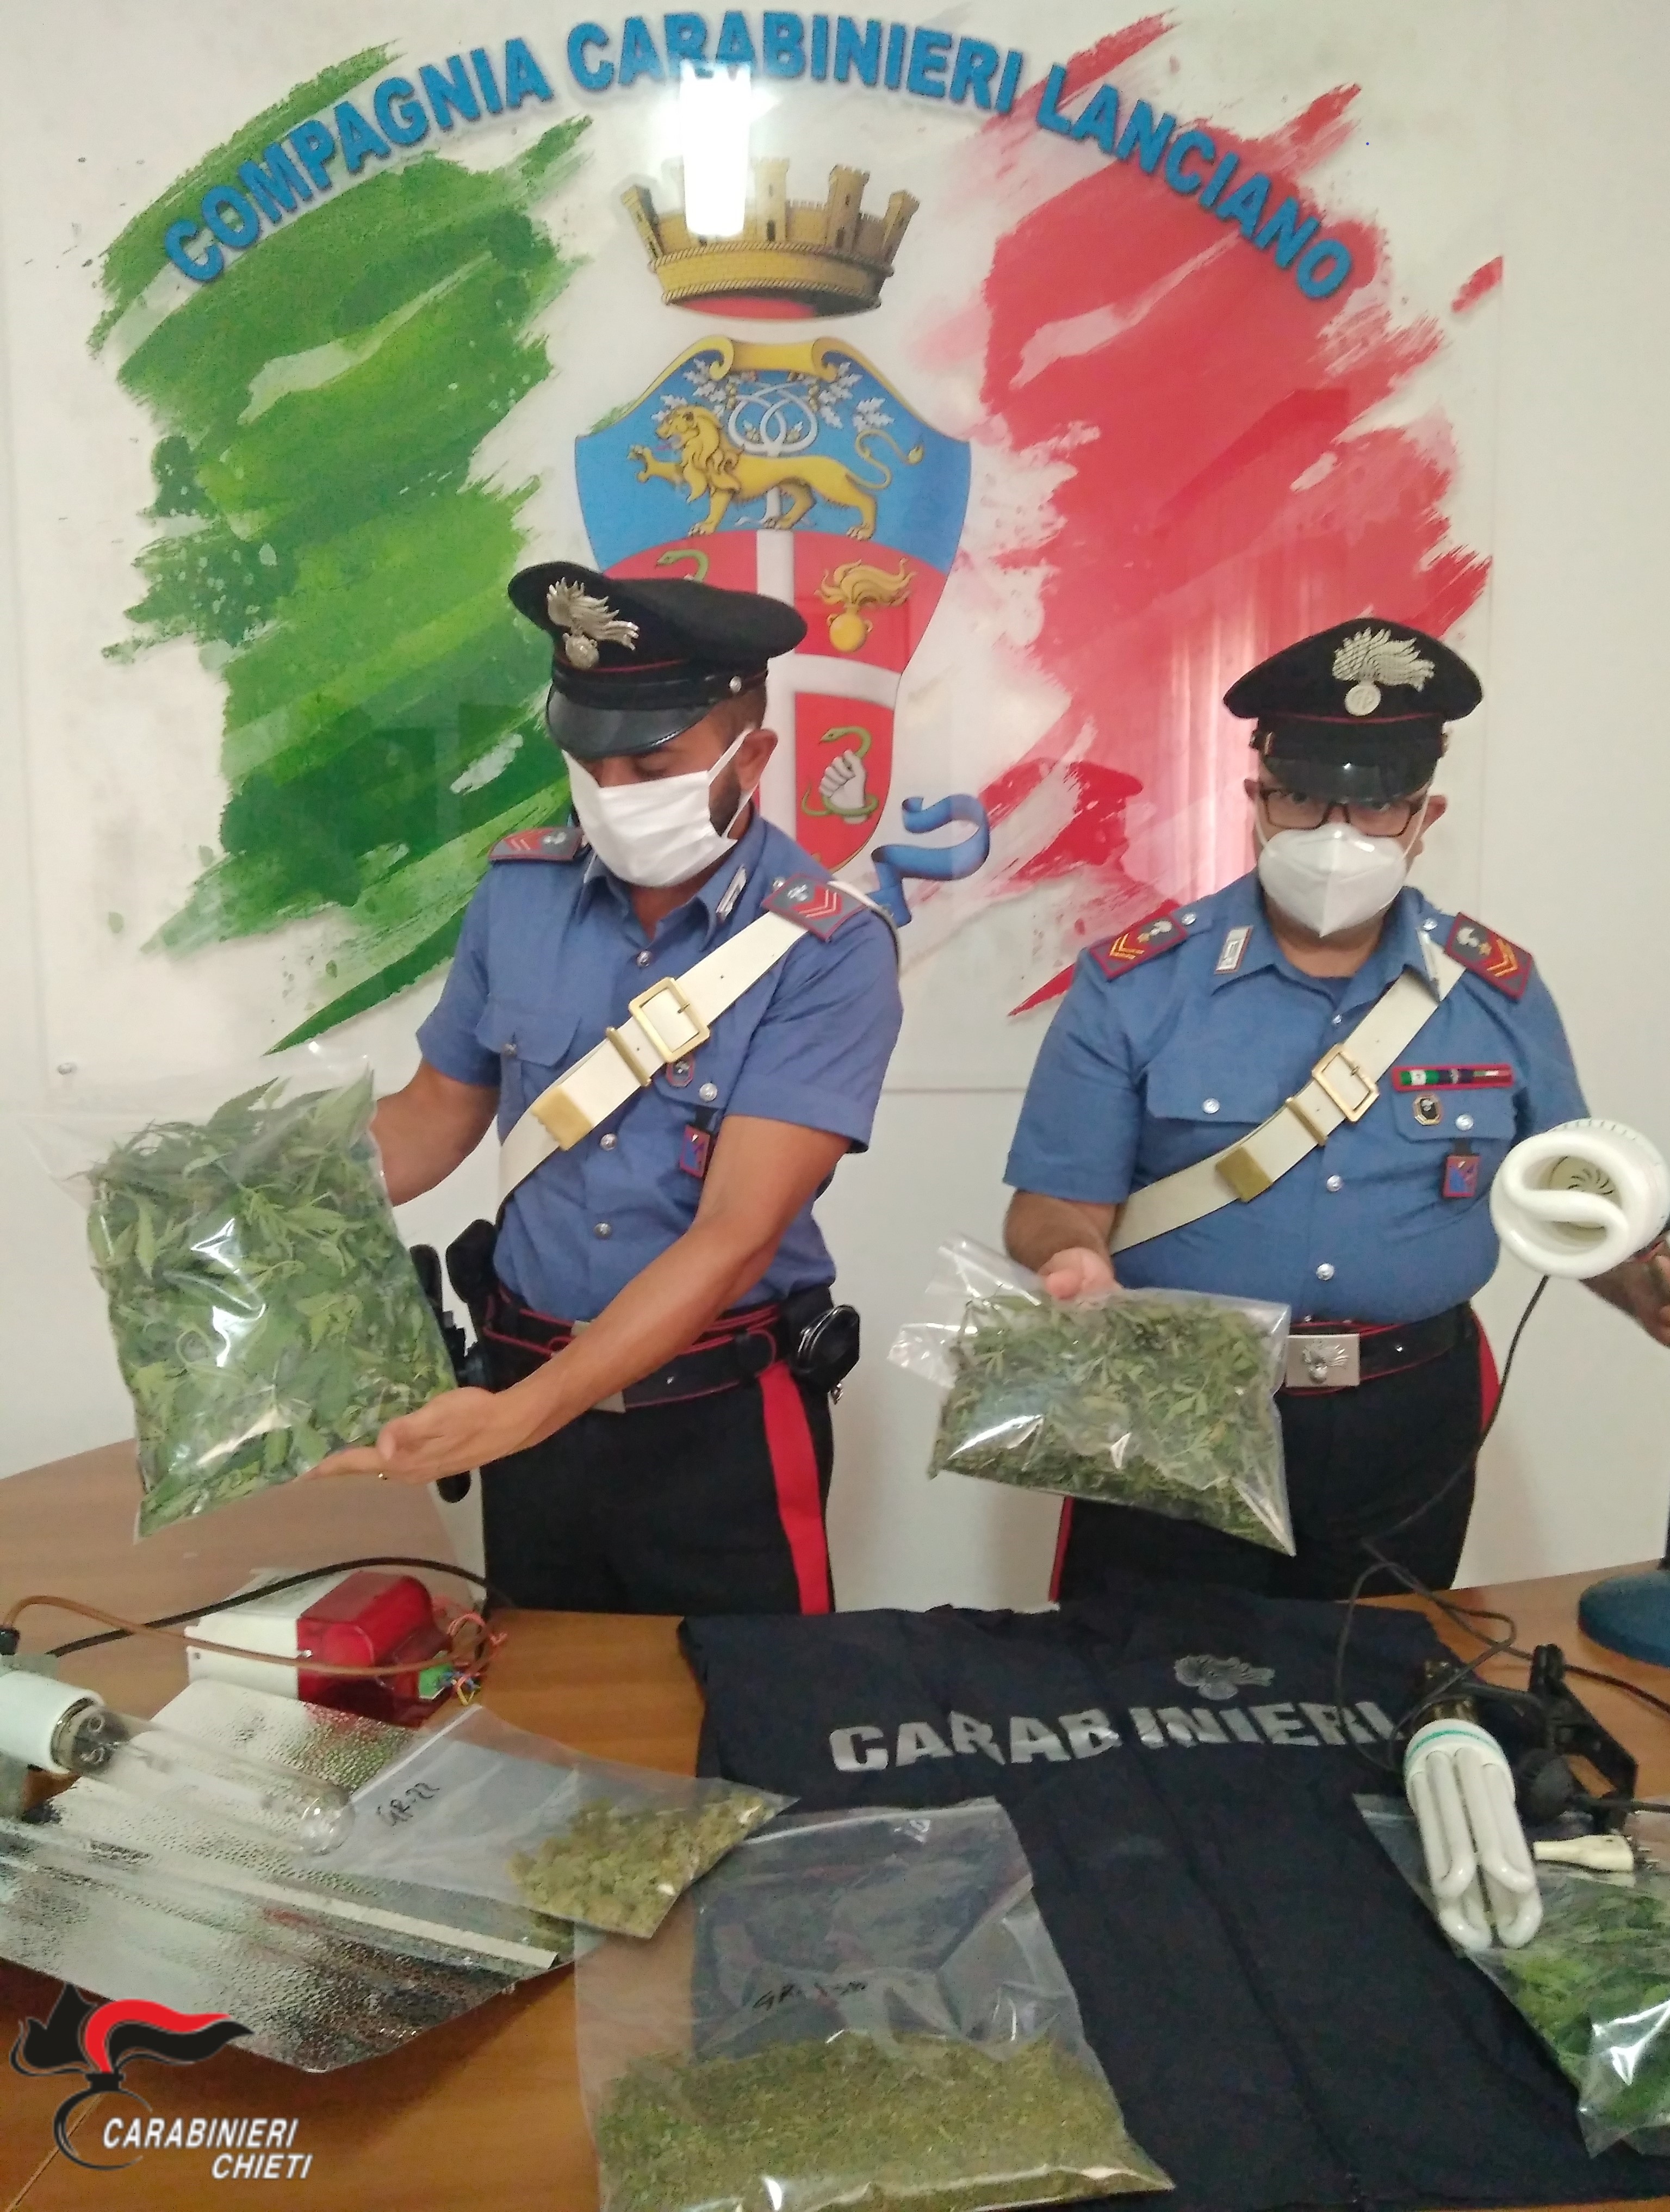 Sant'Eusanio del Sangro, coltiva marjuana nel soffitto, Carabinieri di Lanciano arrestano 57enne